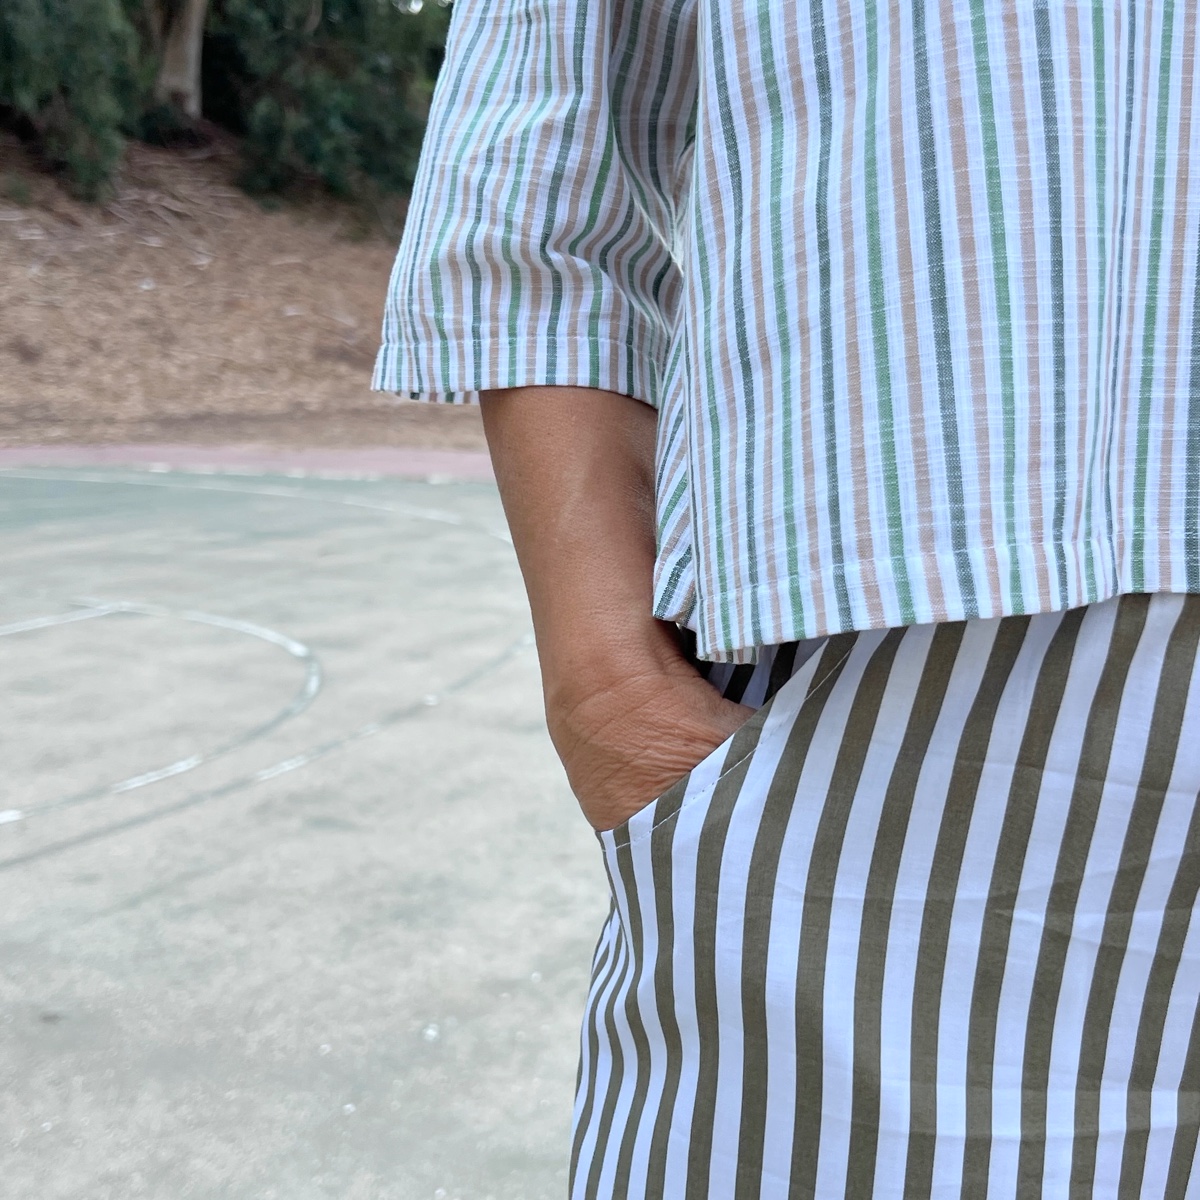 מכנסיים מדגם נור עם הדפס פסים לאורך בחאקי/זית ולבן - זוג אחרון במידה 16